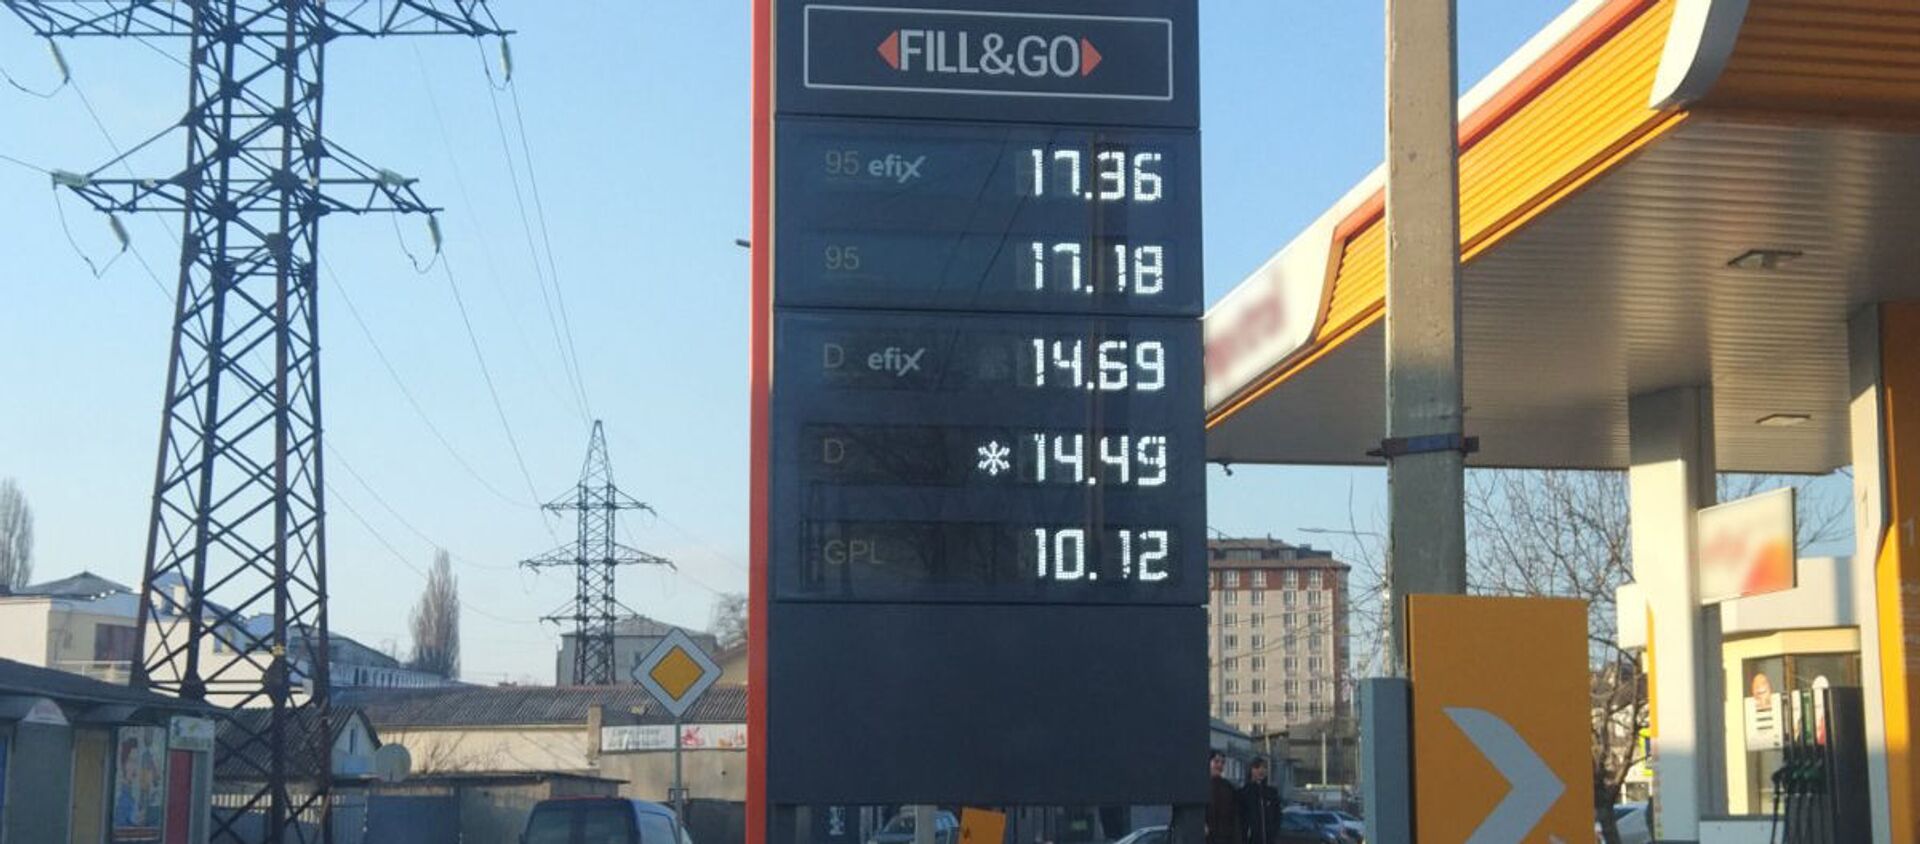  Цена на топливо в Молдове (17января) - Sputnik Молдова, 1920, 17.01.2021